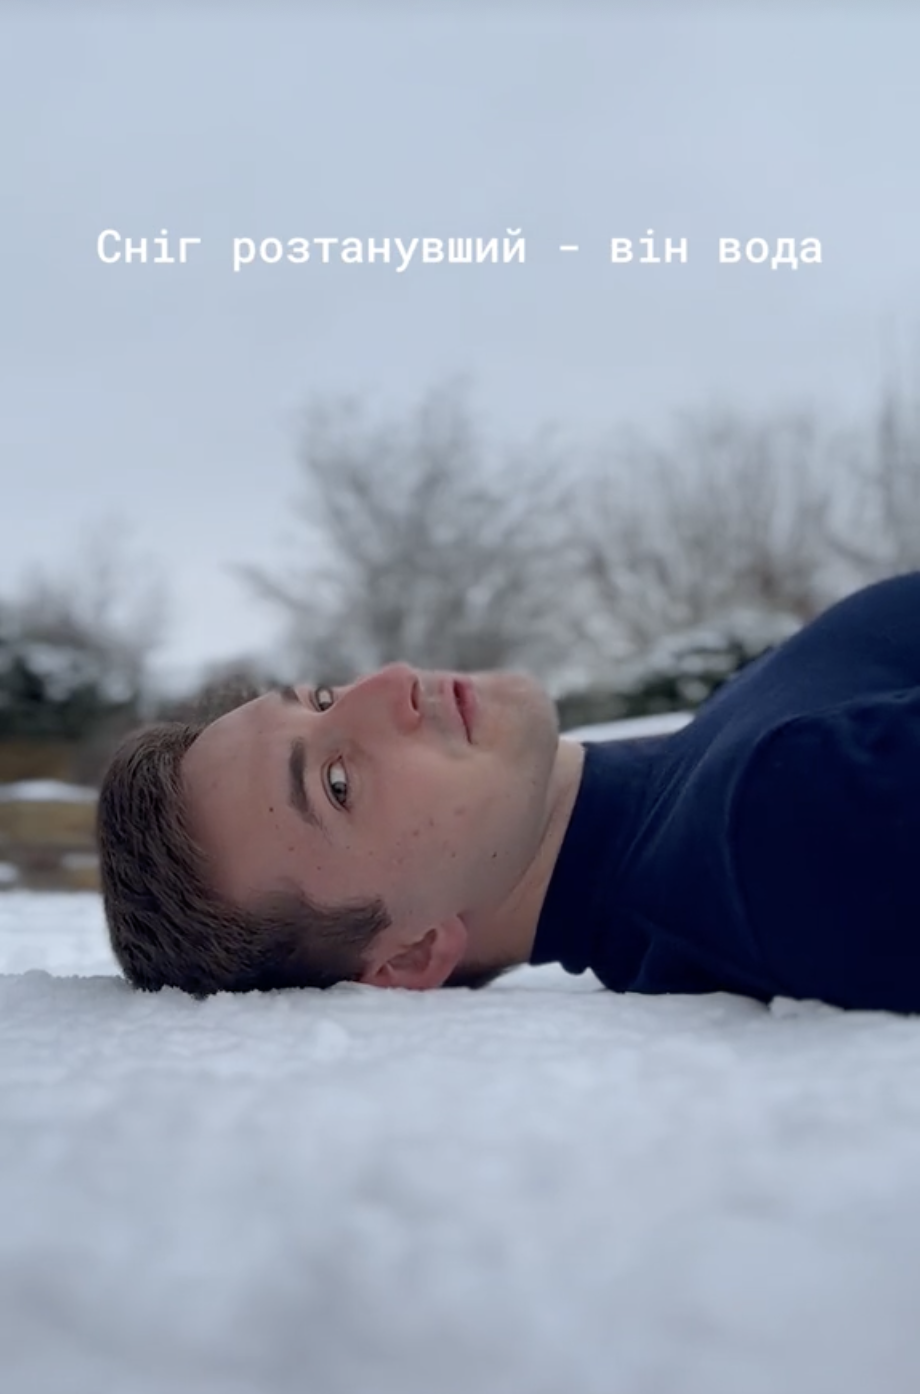 Блогер переклав українською хіт Ірини Білик "Снег", який виконував путініст Філіп Кіркоров: що із цього вийшло